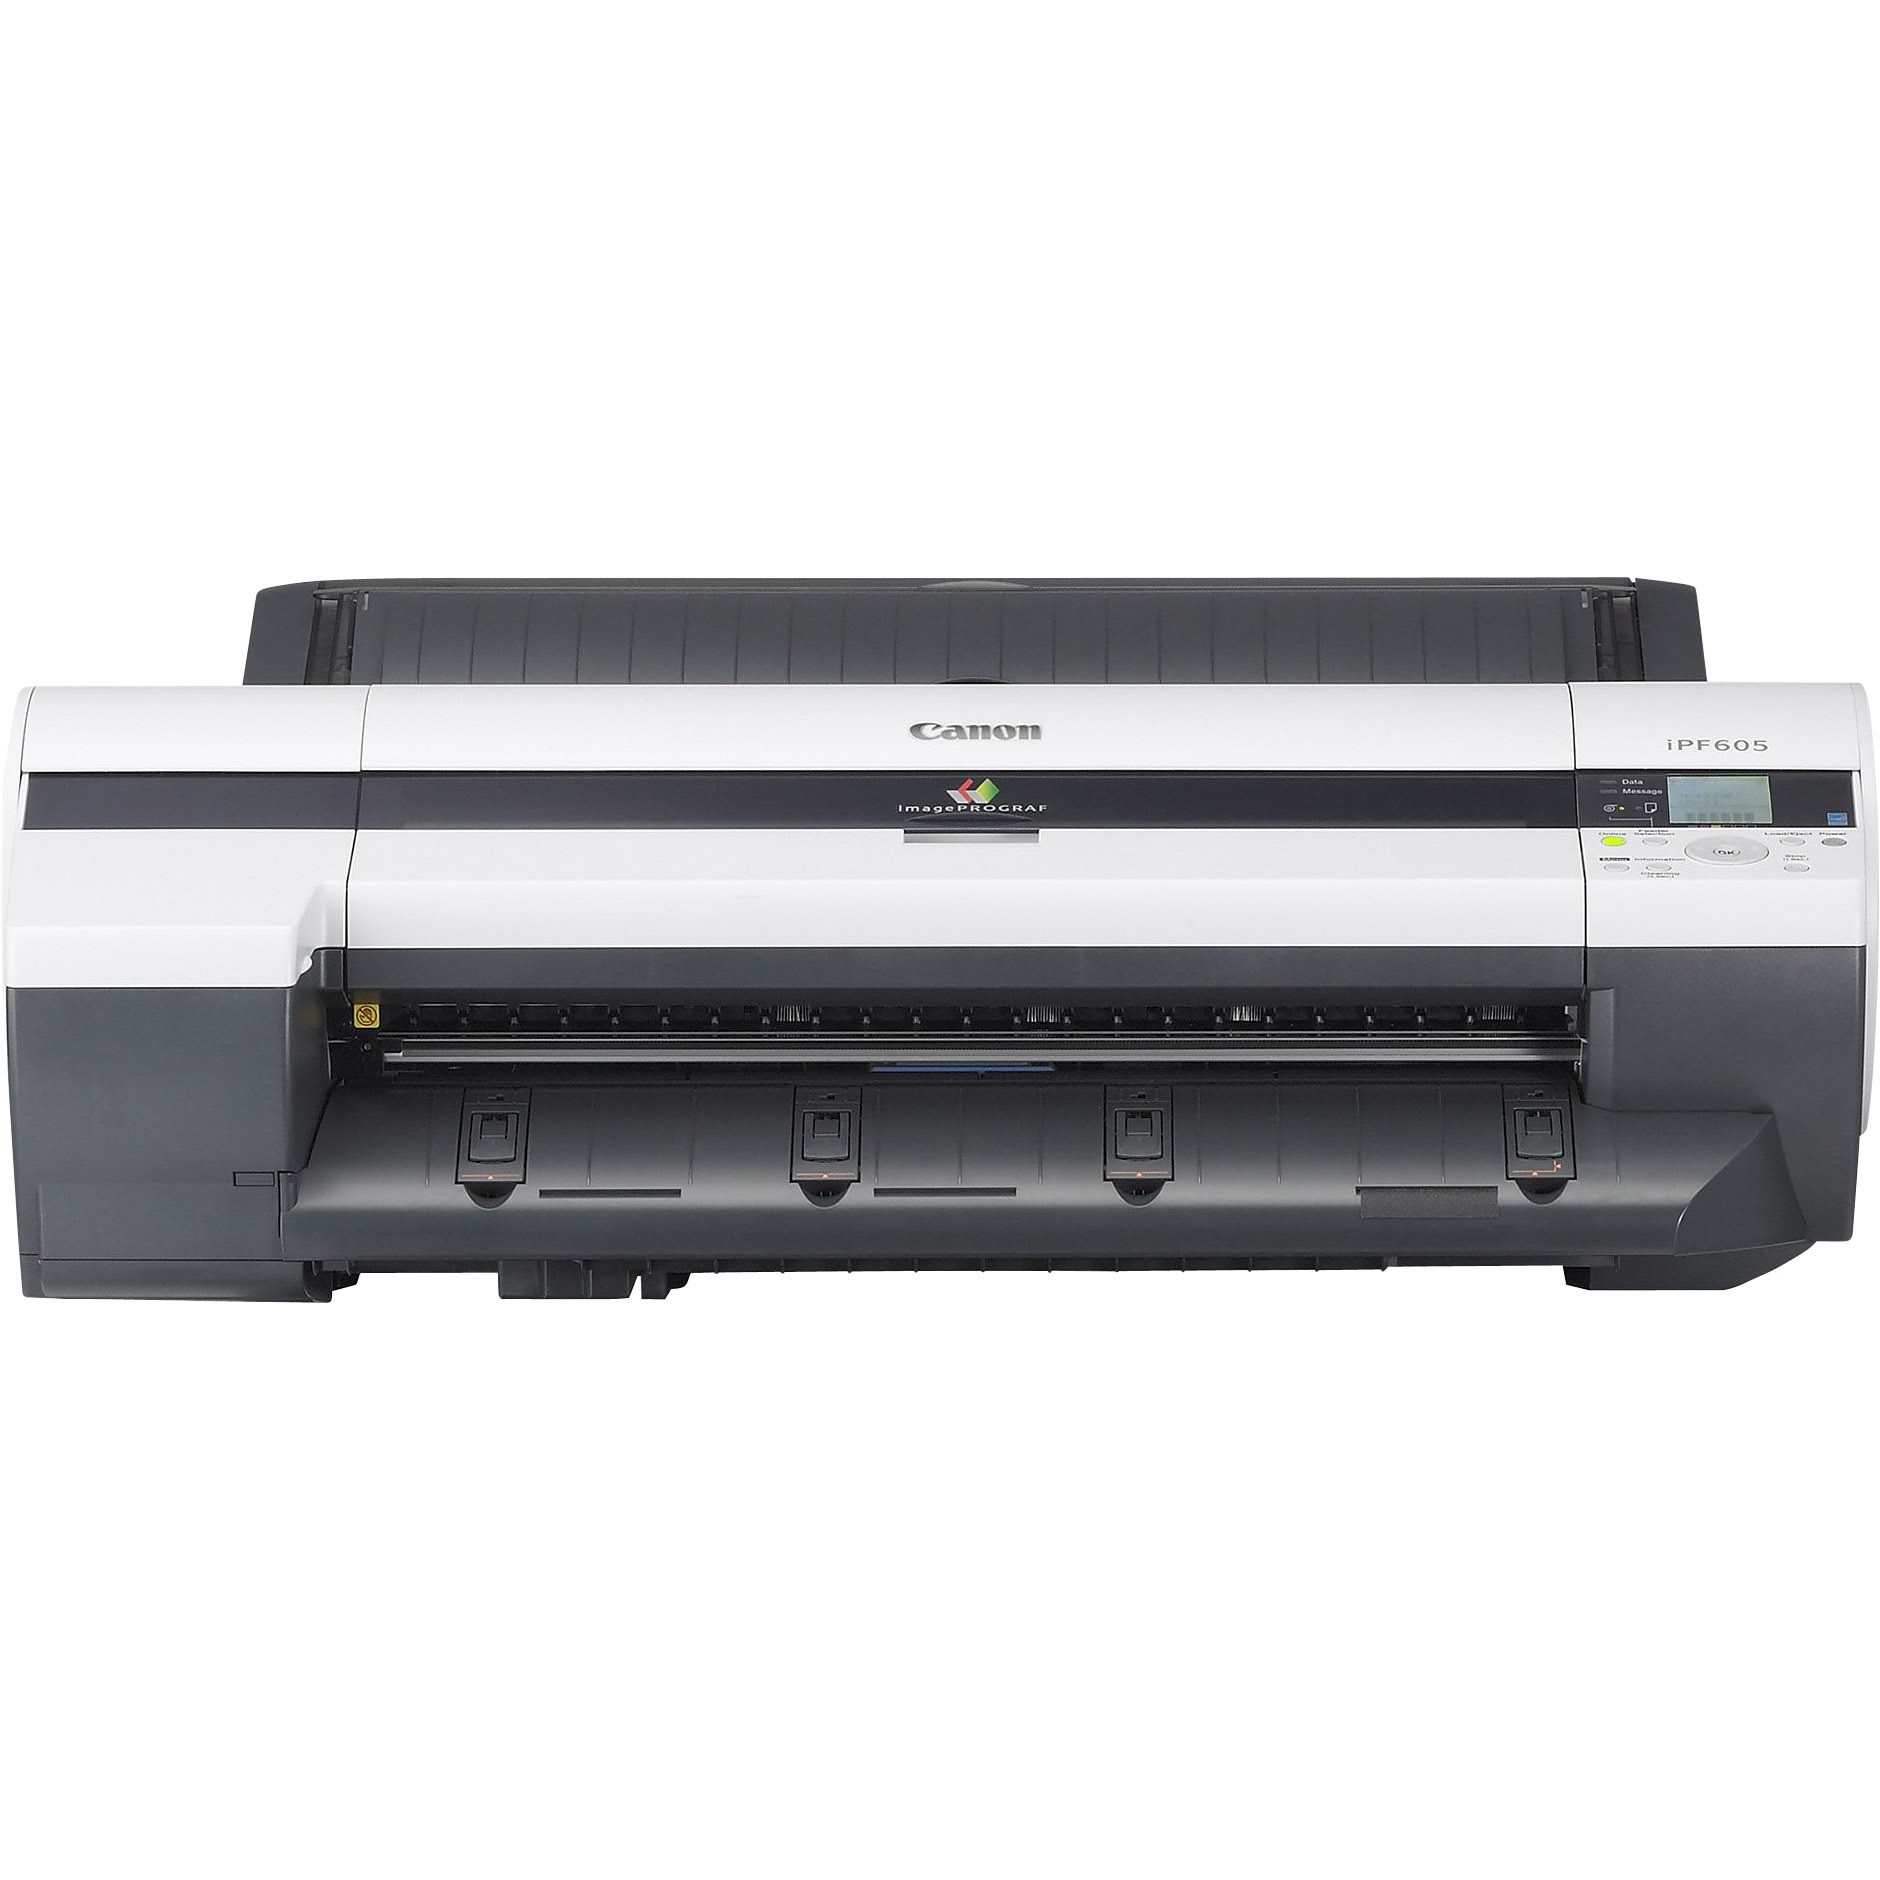 iPF605 - imagePROGRAF Color Inkjet Printer